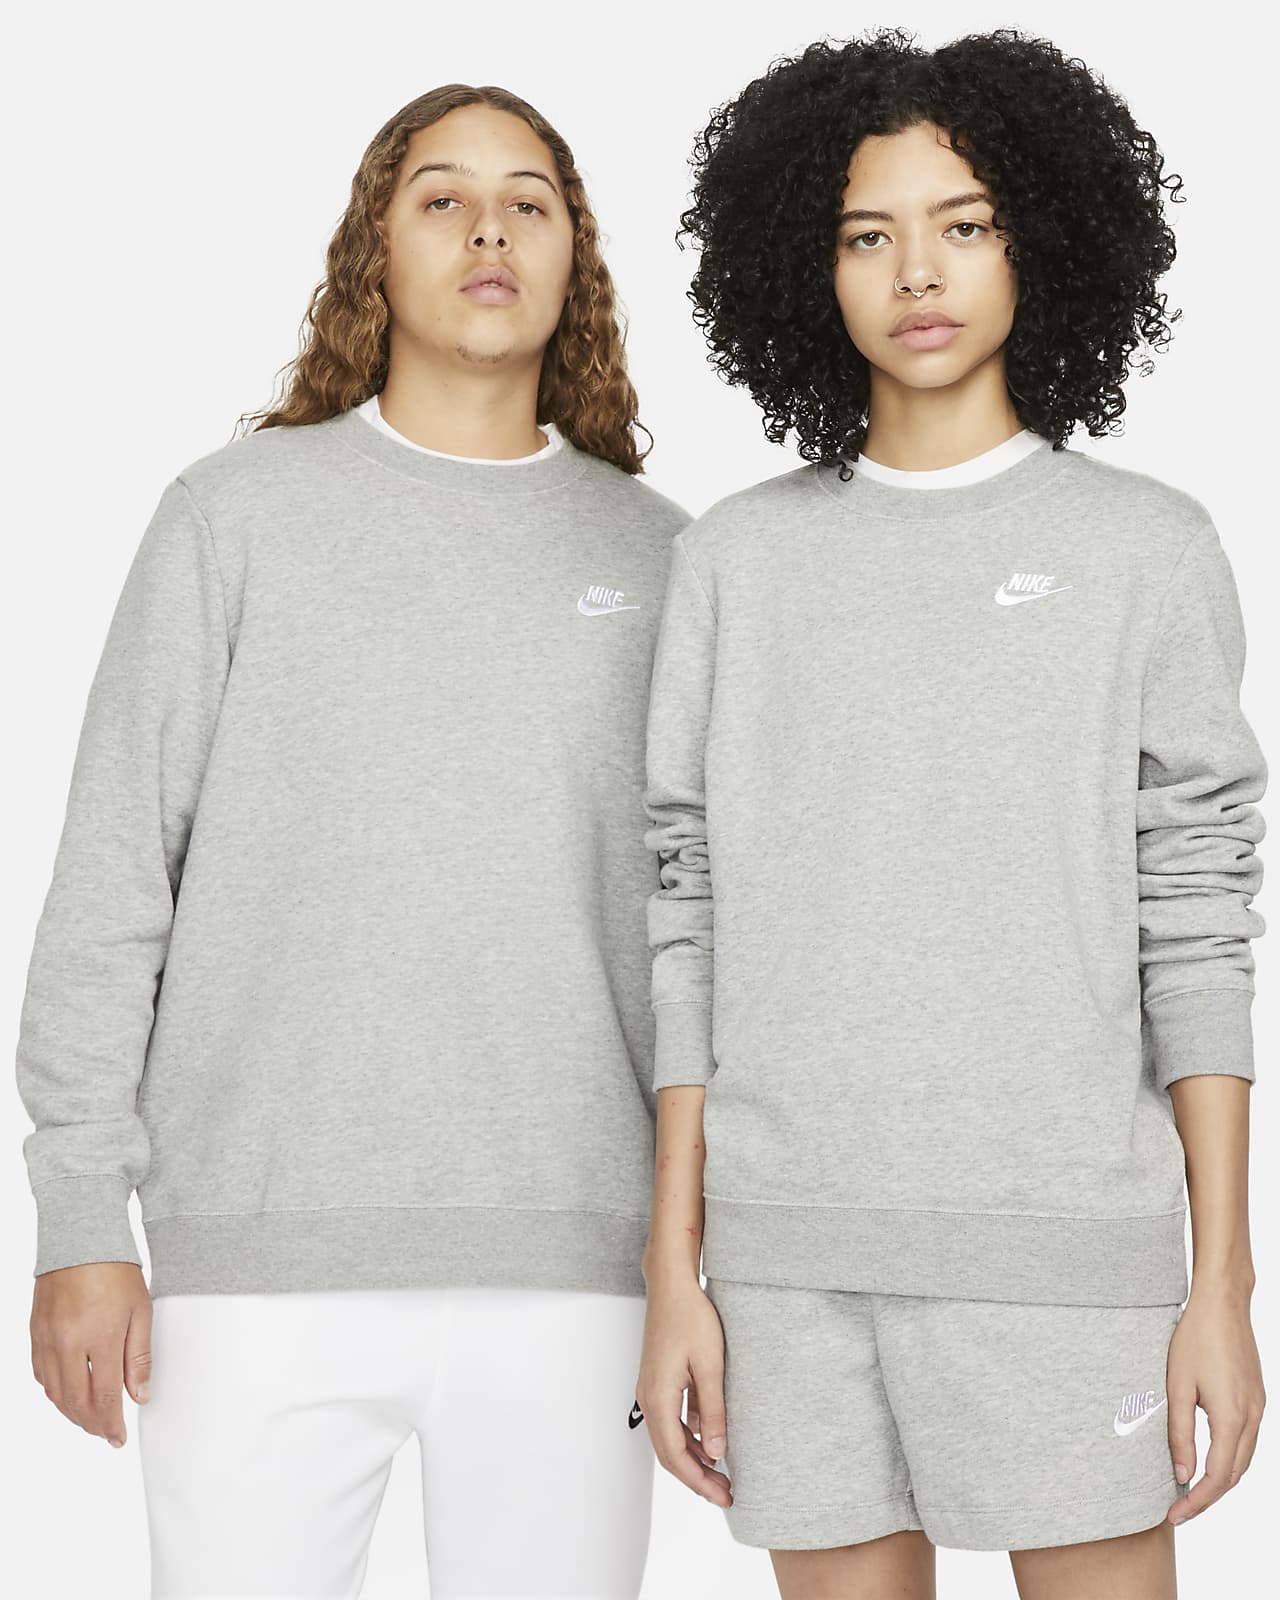 Sportswear Fleece Women's Crew-Neck Sweatshirt. Nike LU